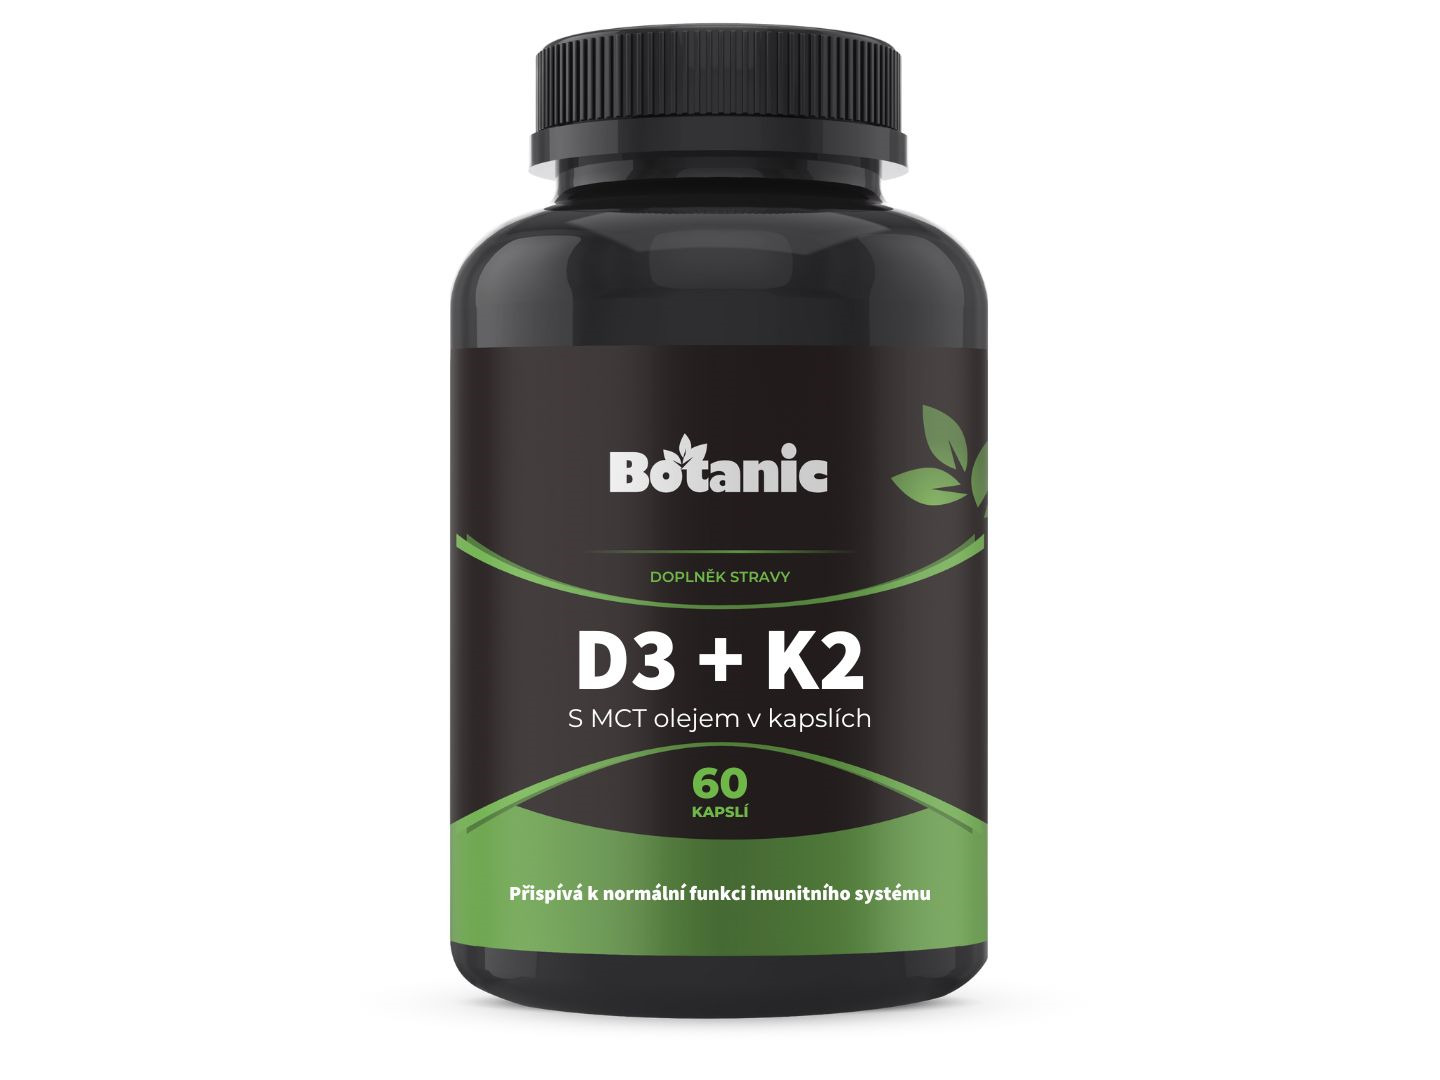 Botanic Vitamín D3 + K2 - s MCT olejem v kapslích 60kap.